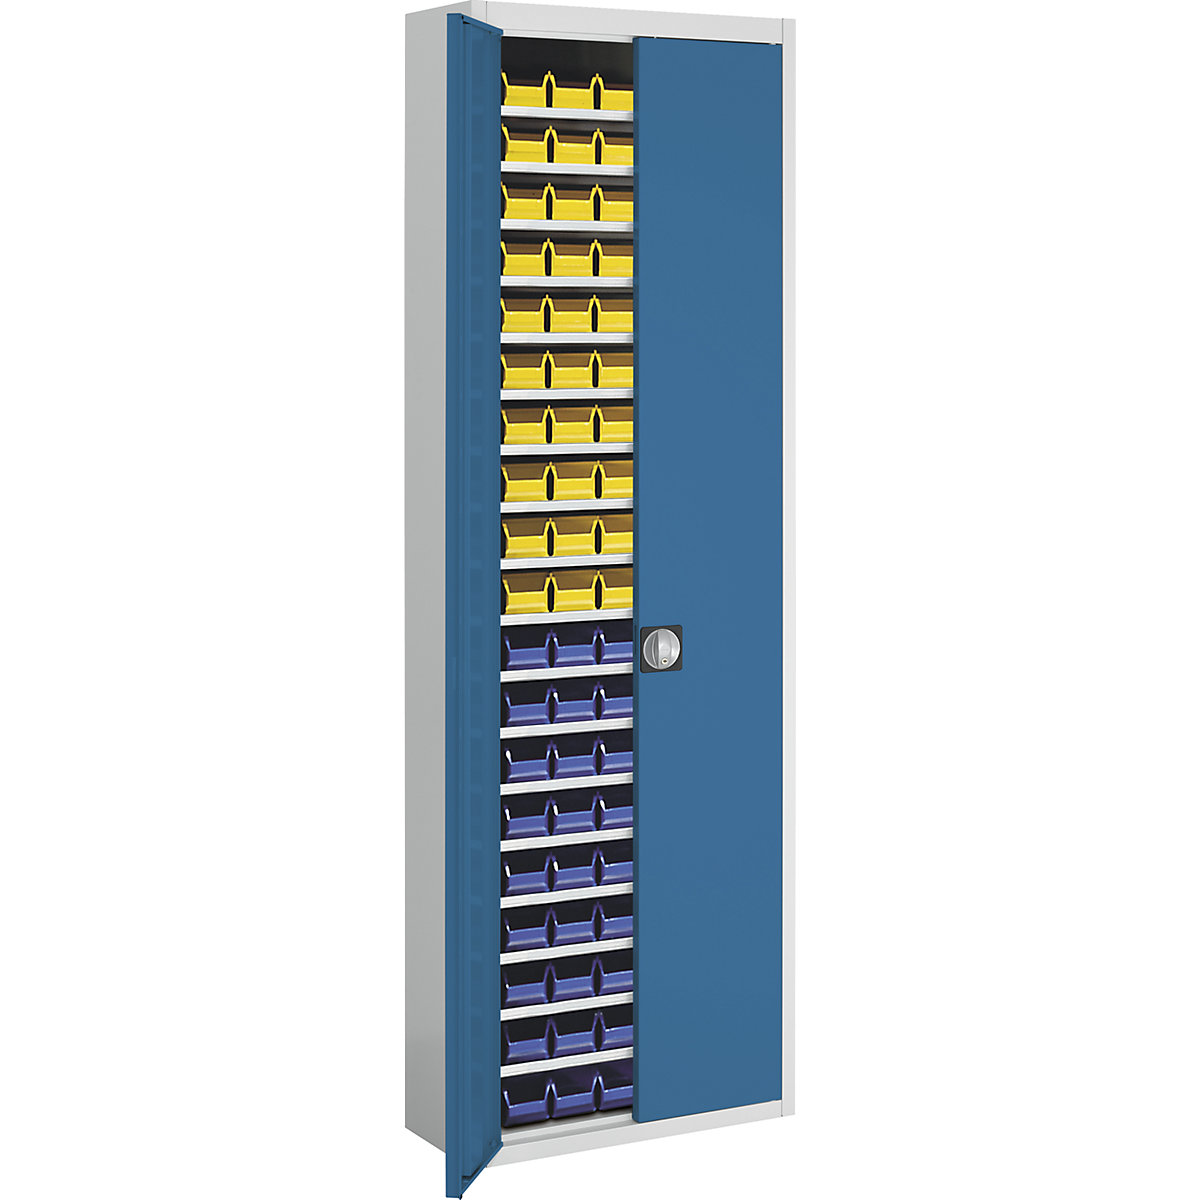 Skladišni ormar s otvorenim skladišnim kutijama – mauser, VxŠxD 2150 x 680 x 280 mm, u dvije boje, korpus u sivoj boji, vrata u crnoj boji, 114 kutija-9